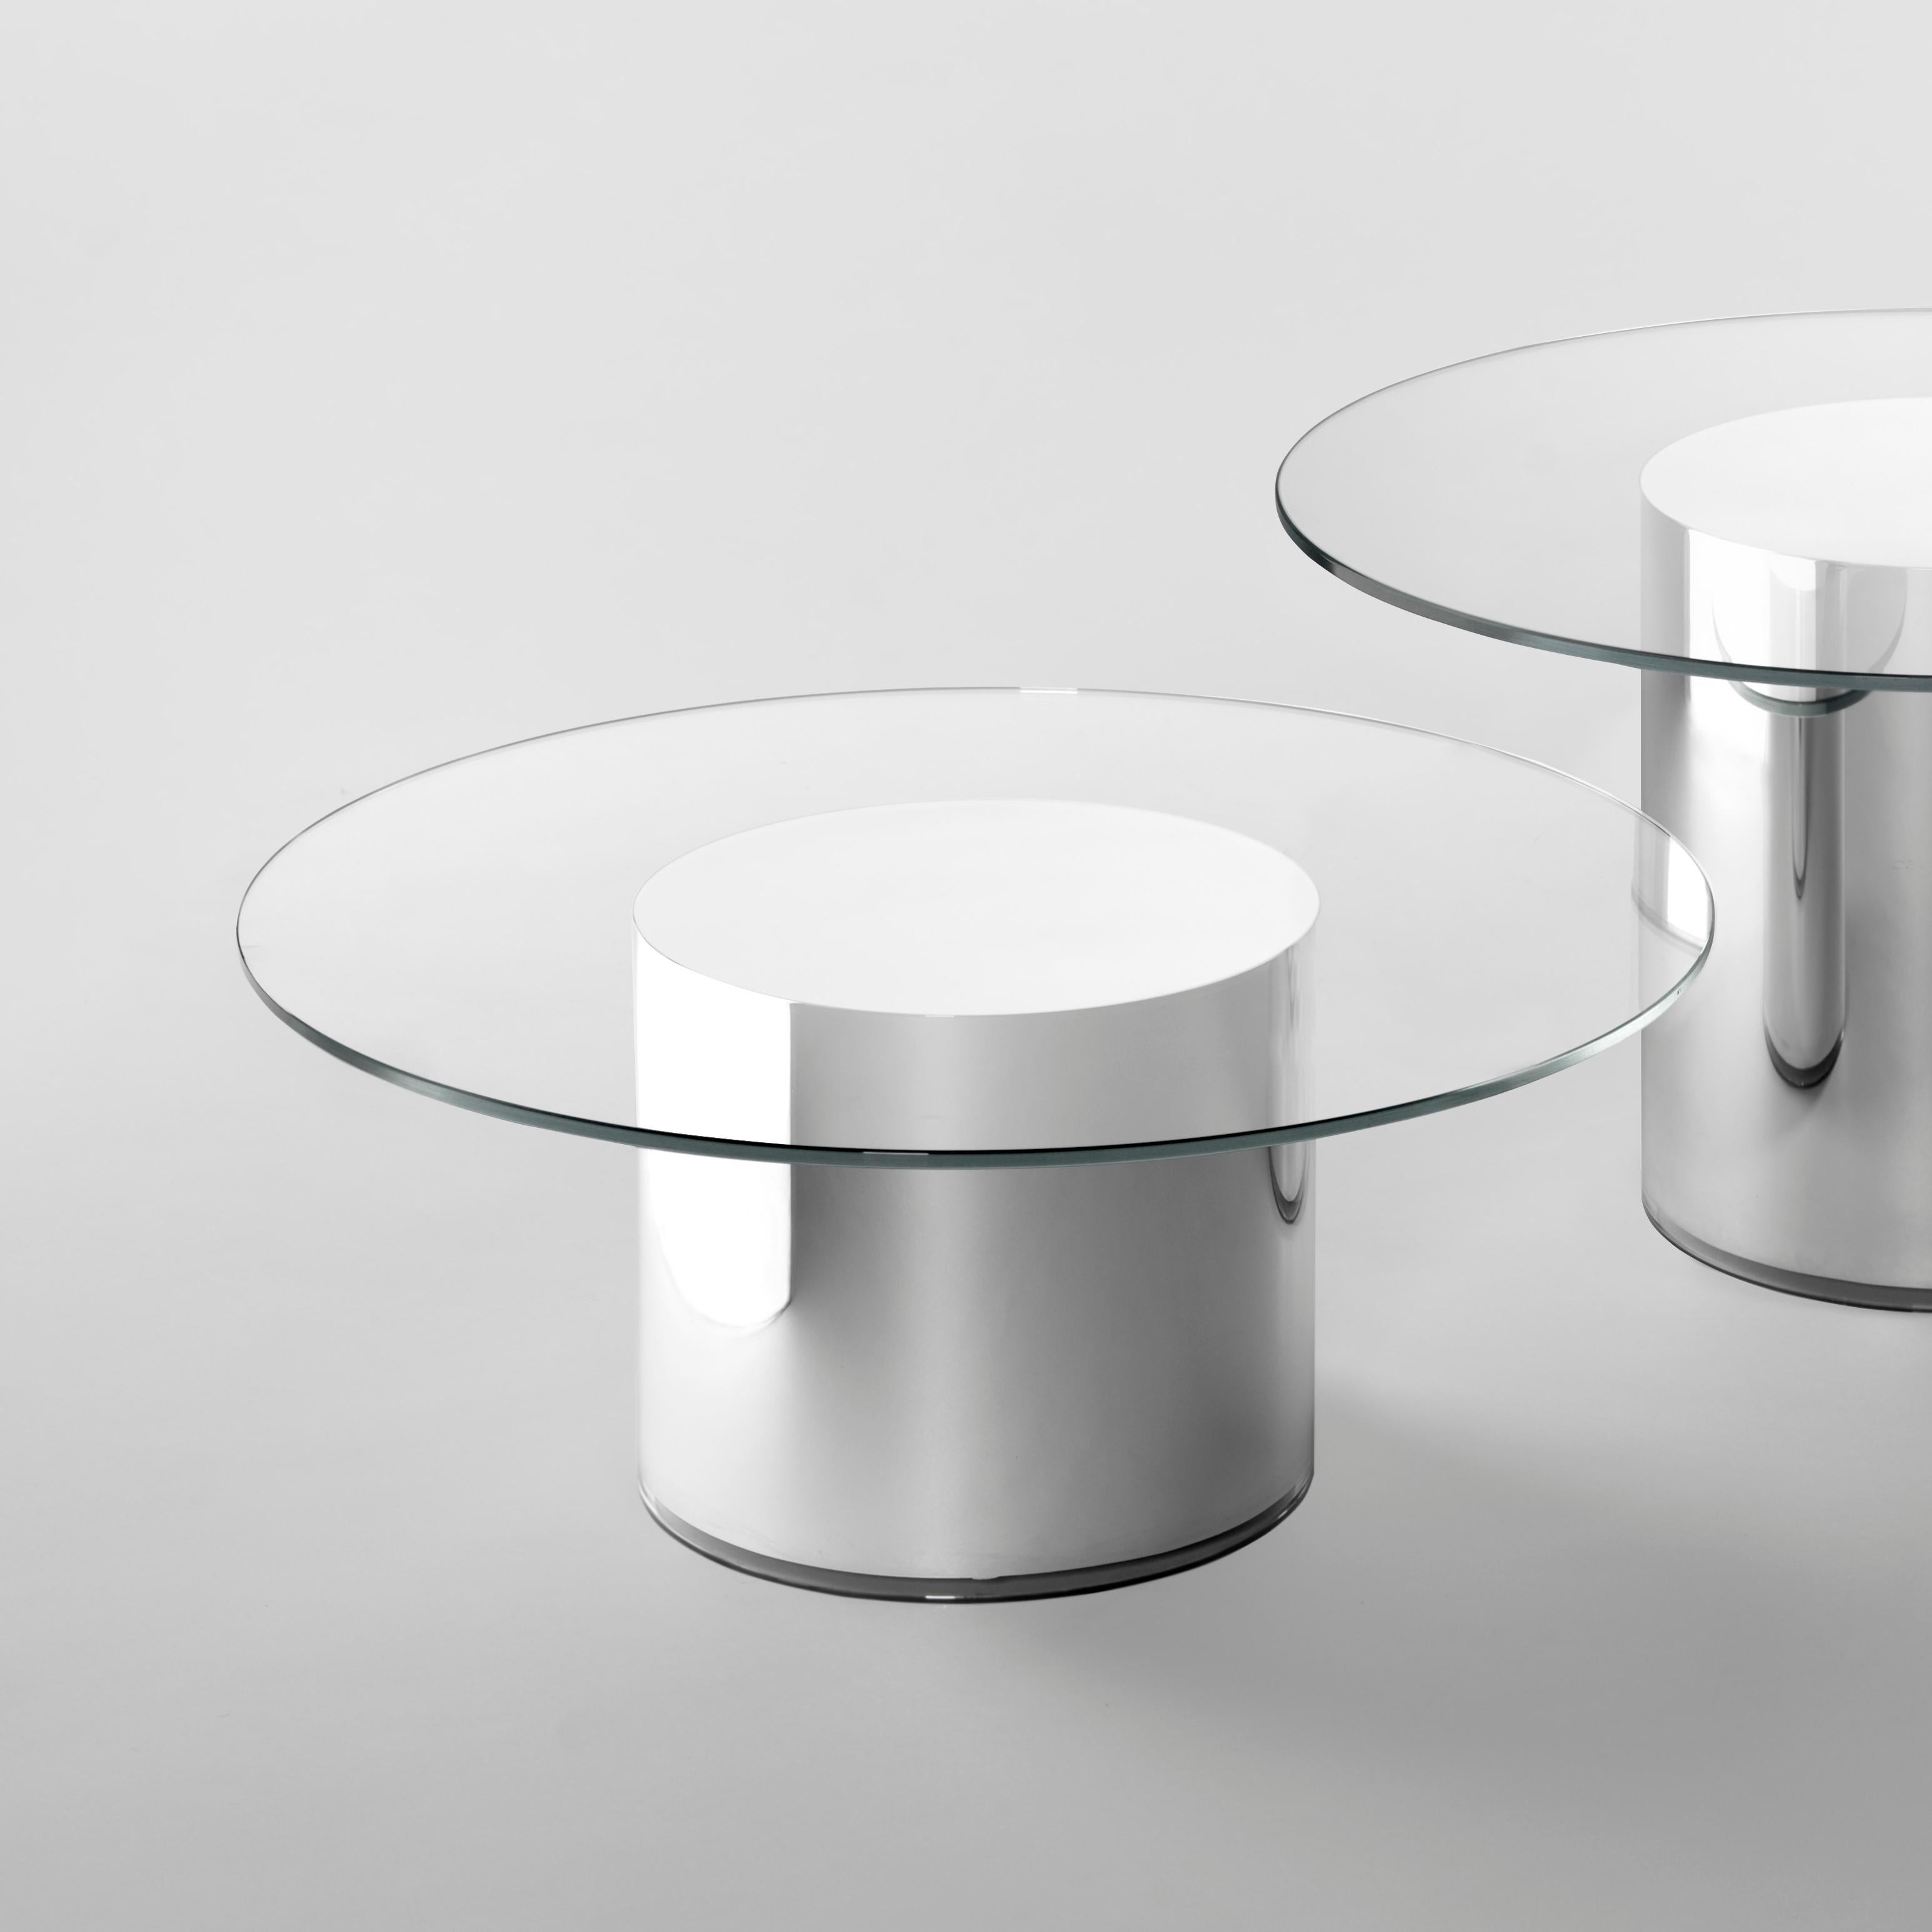 Les tables d'appoint 2001 sont composées d'un verre ultra-clair et d'une base miroir en tube pyrex, sans aucun raccord. La brillance métallique crée une illusion d'optique, évoquant un futur parfait n'appartenant pas au passé.

Un plateau en verre